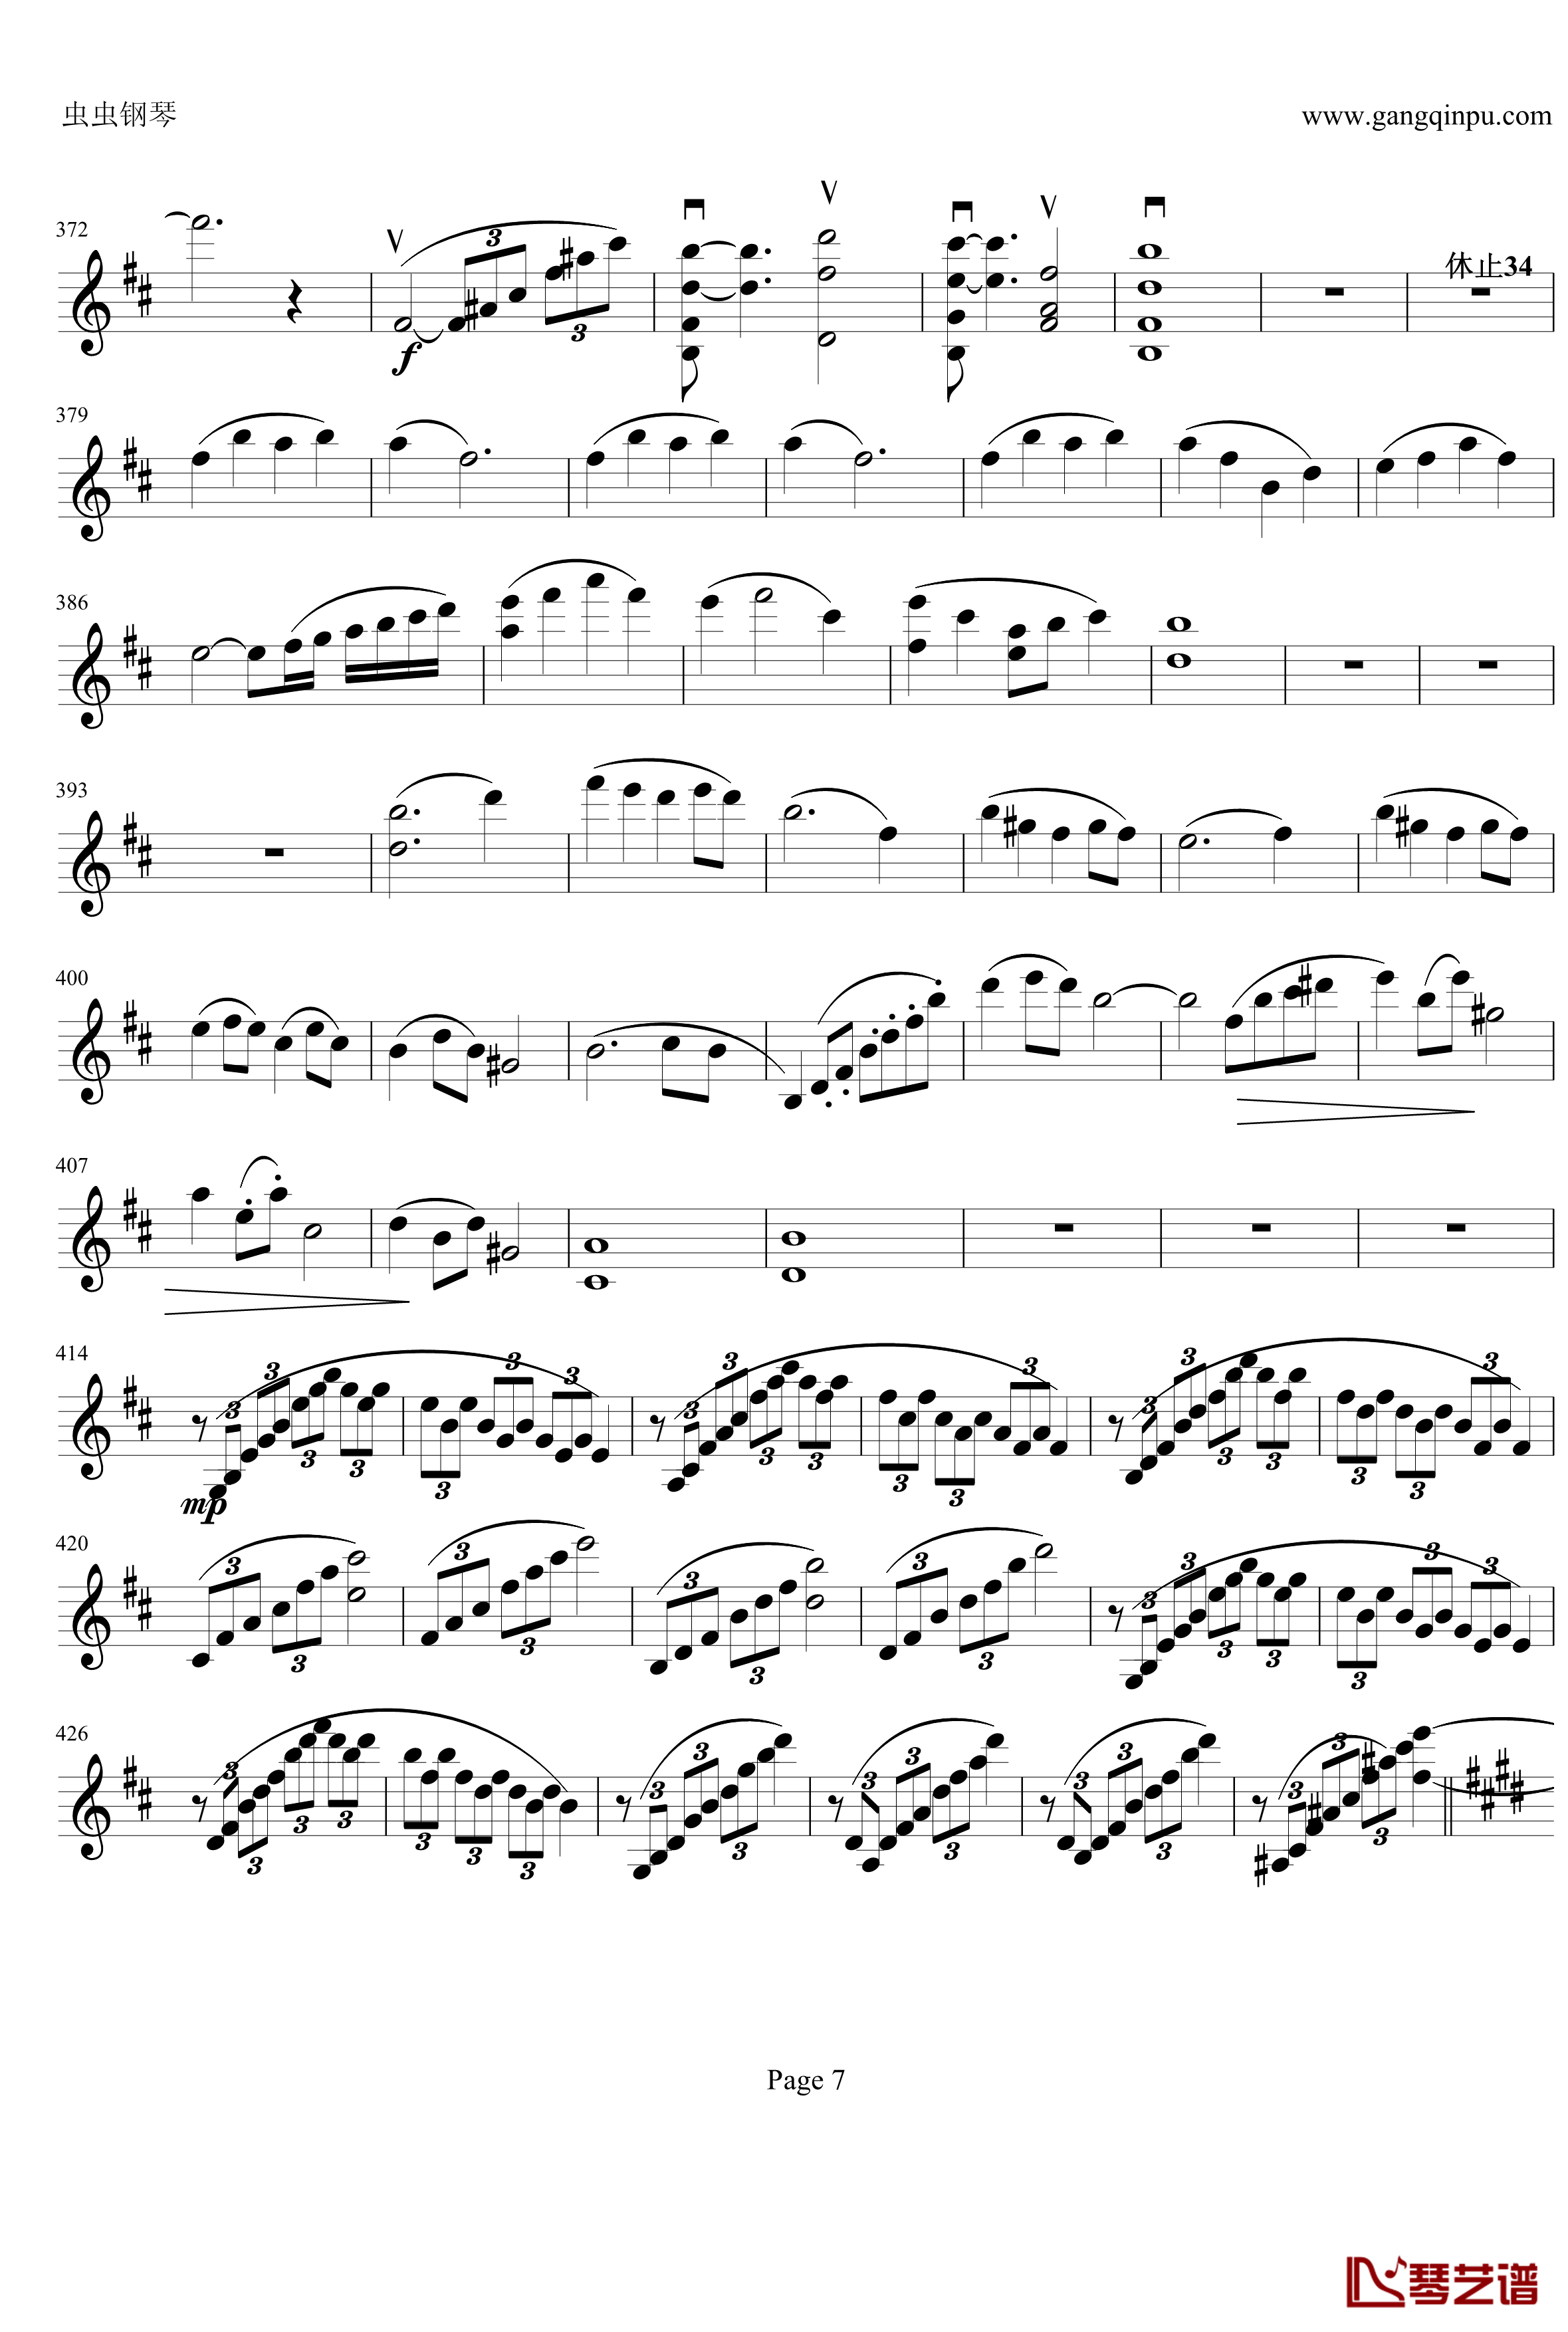 云南风情钢琴谱-第一乐章-b小调小提琴协奏曲-项道荣7